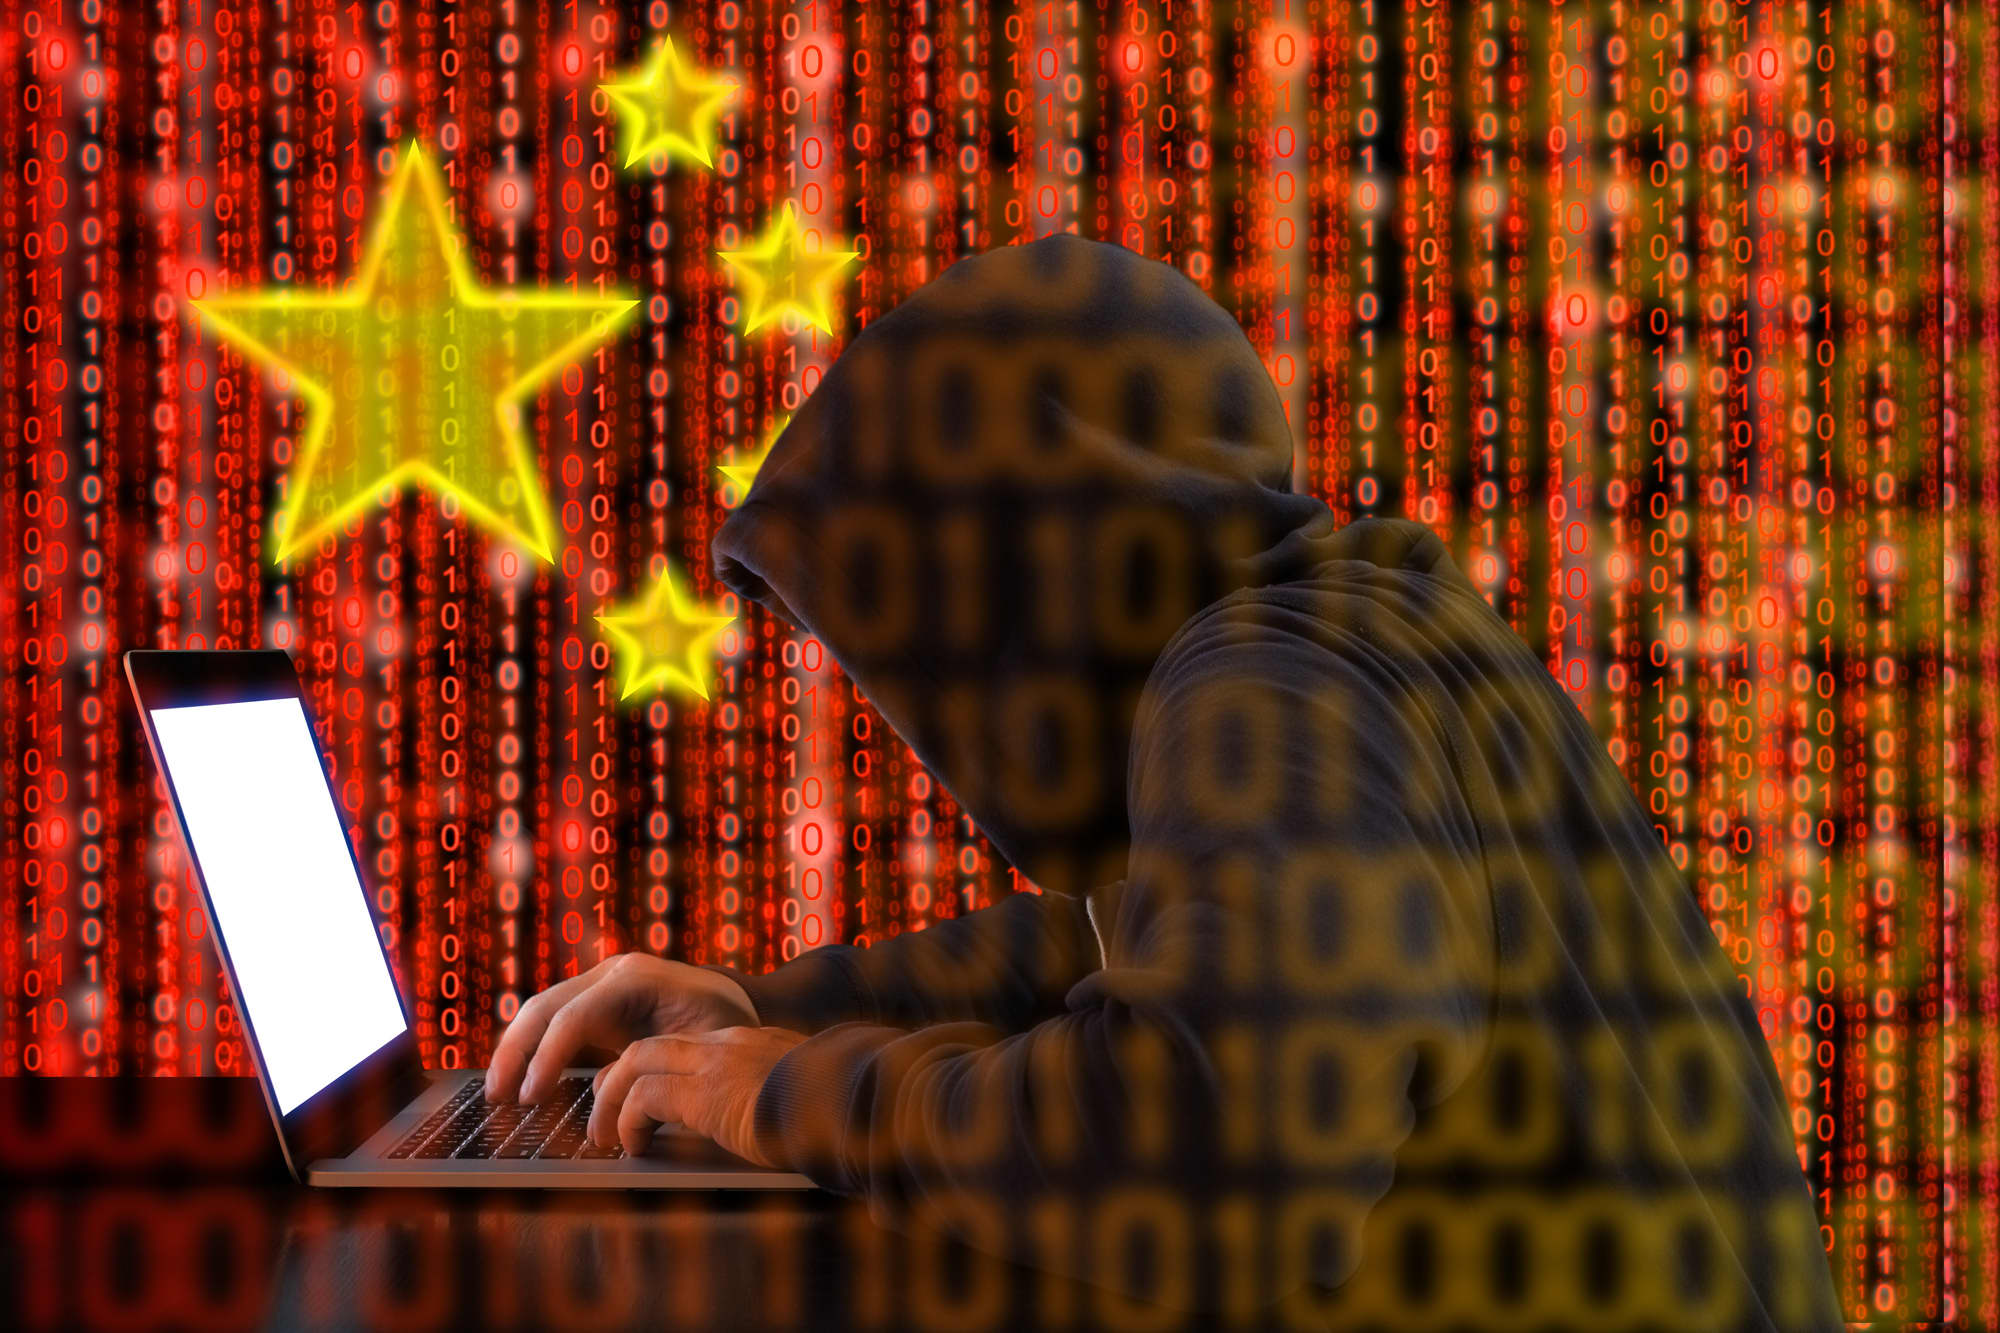 Gran Bretaña culpa a China del hackeo que permitió acceder a los datos de millones de votantes